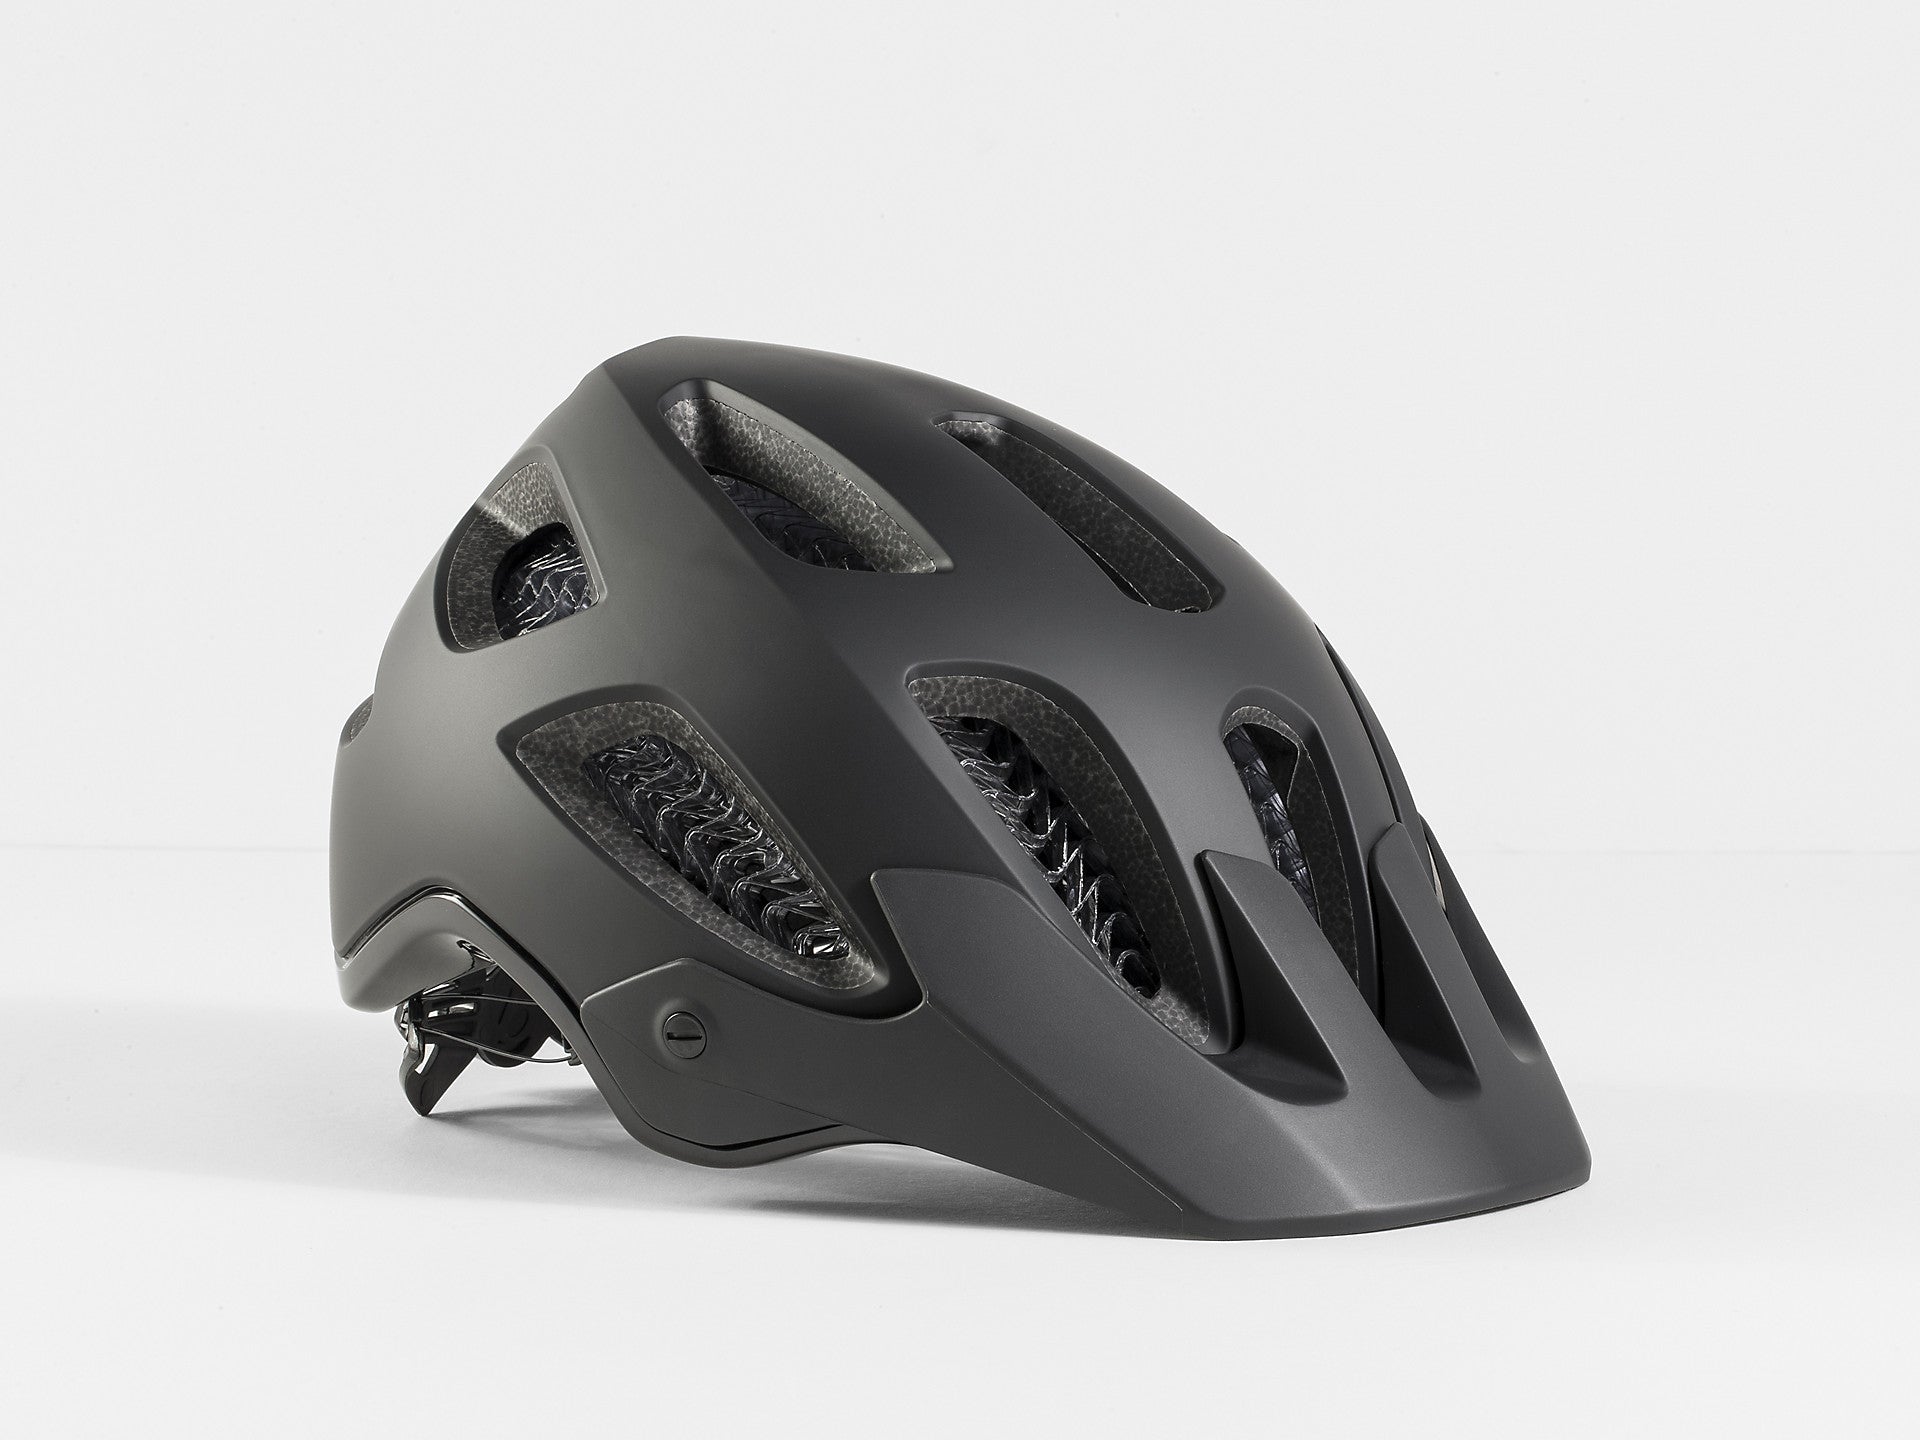 Bontrager Rally WaveCel Mountain Bike Helmet- Bike Helmets- Wavecel technology- CPSC Standard